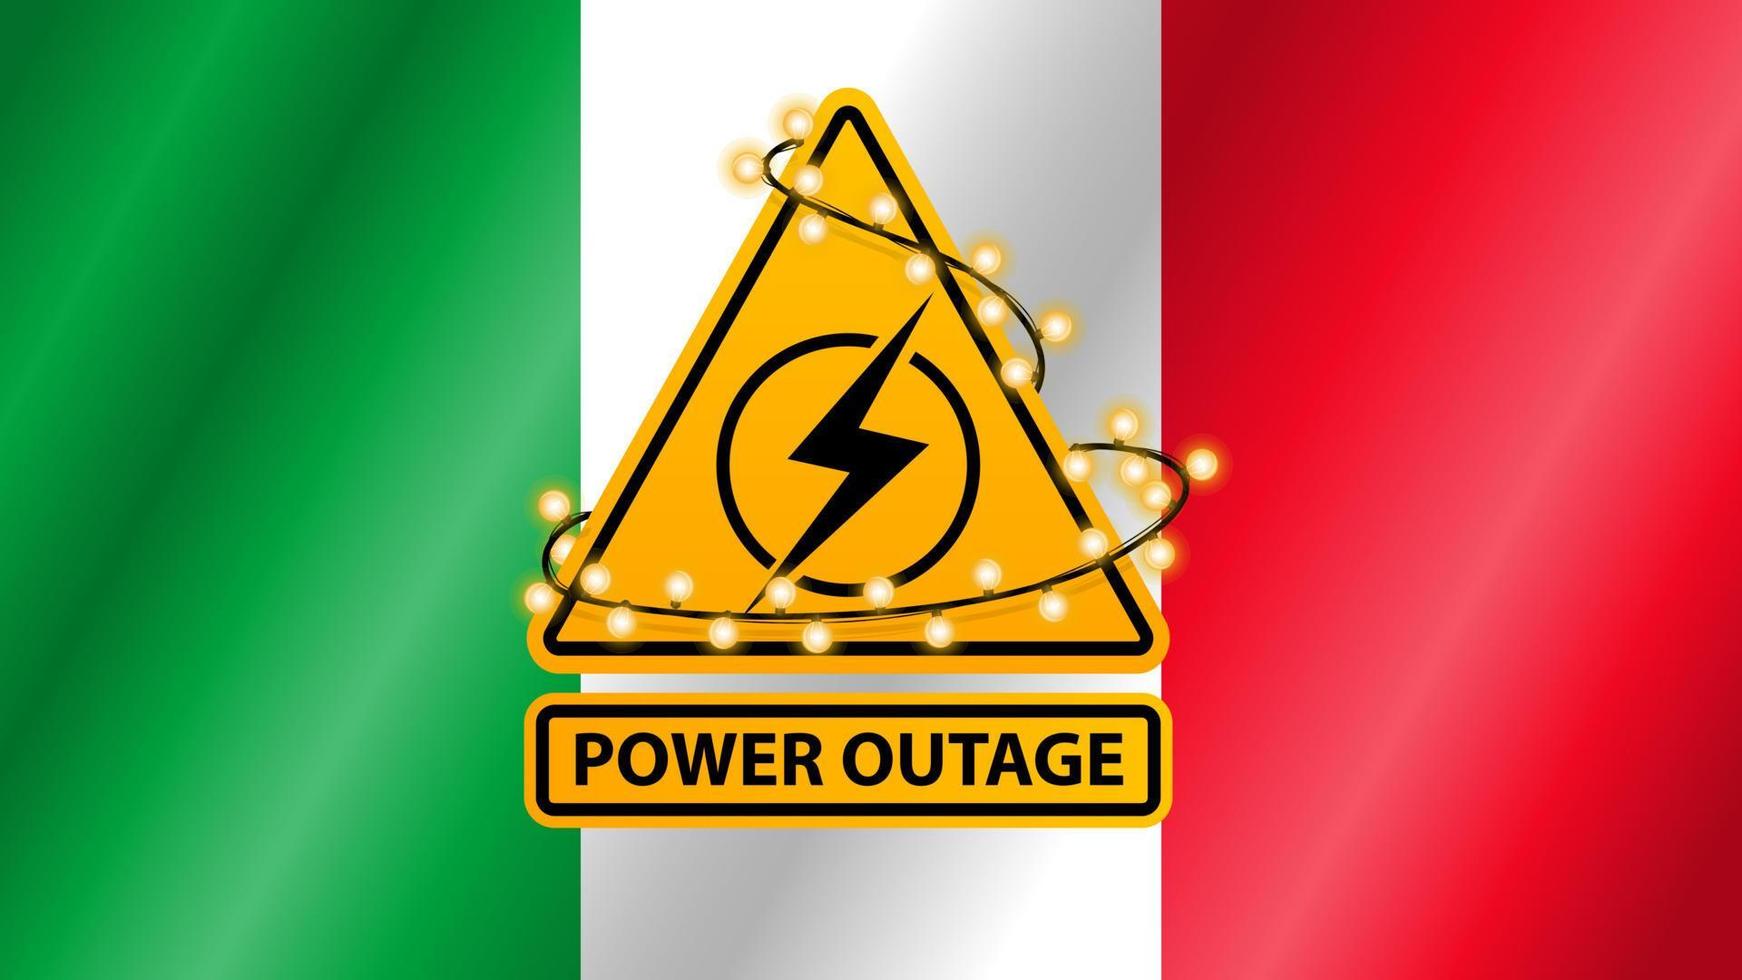 Corte de energía, señal de advertencia amarilla envuelta con guirnalda en el fondo de la bandera de Italia vector